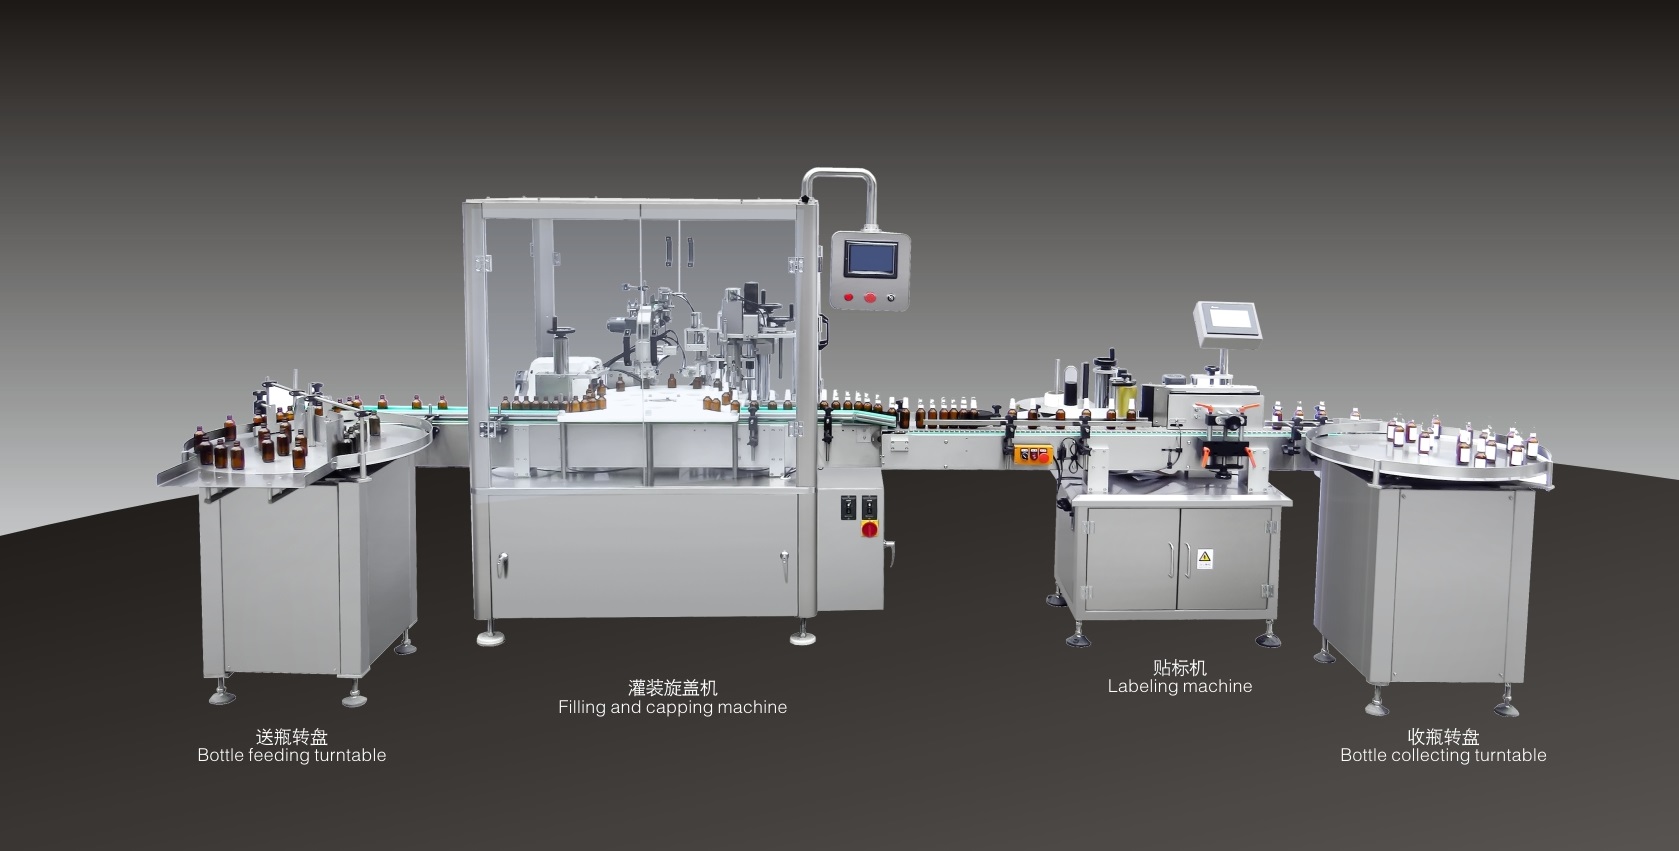 
中国工业博物尊龙凯时人生就是博馆的包装自动化工程年产值达1000万㎡